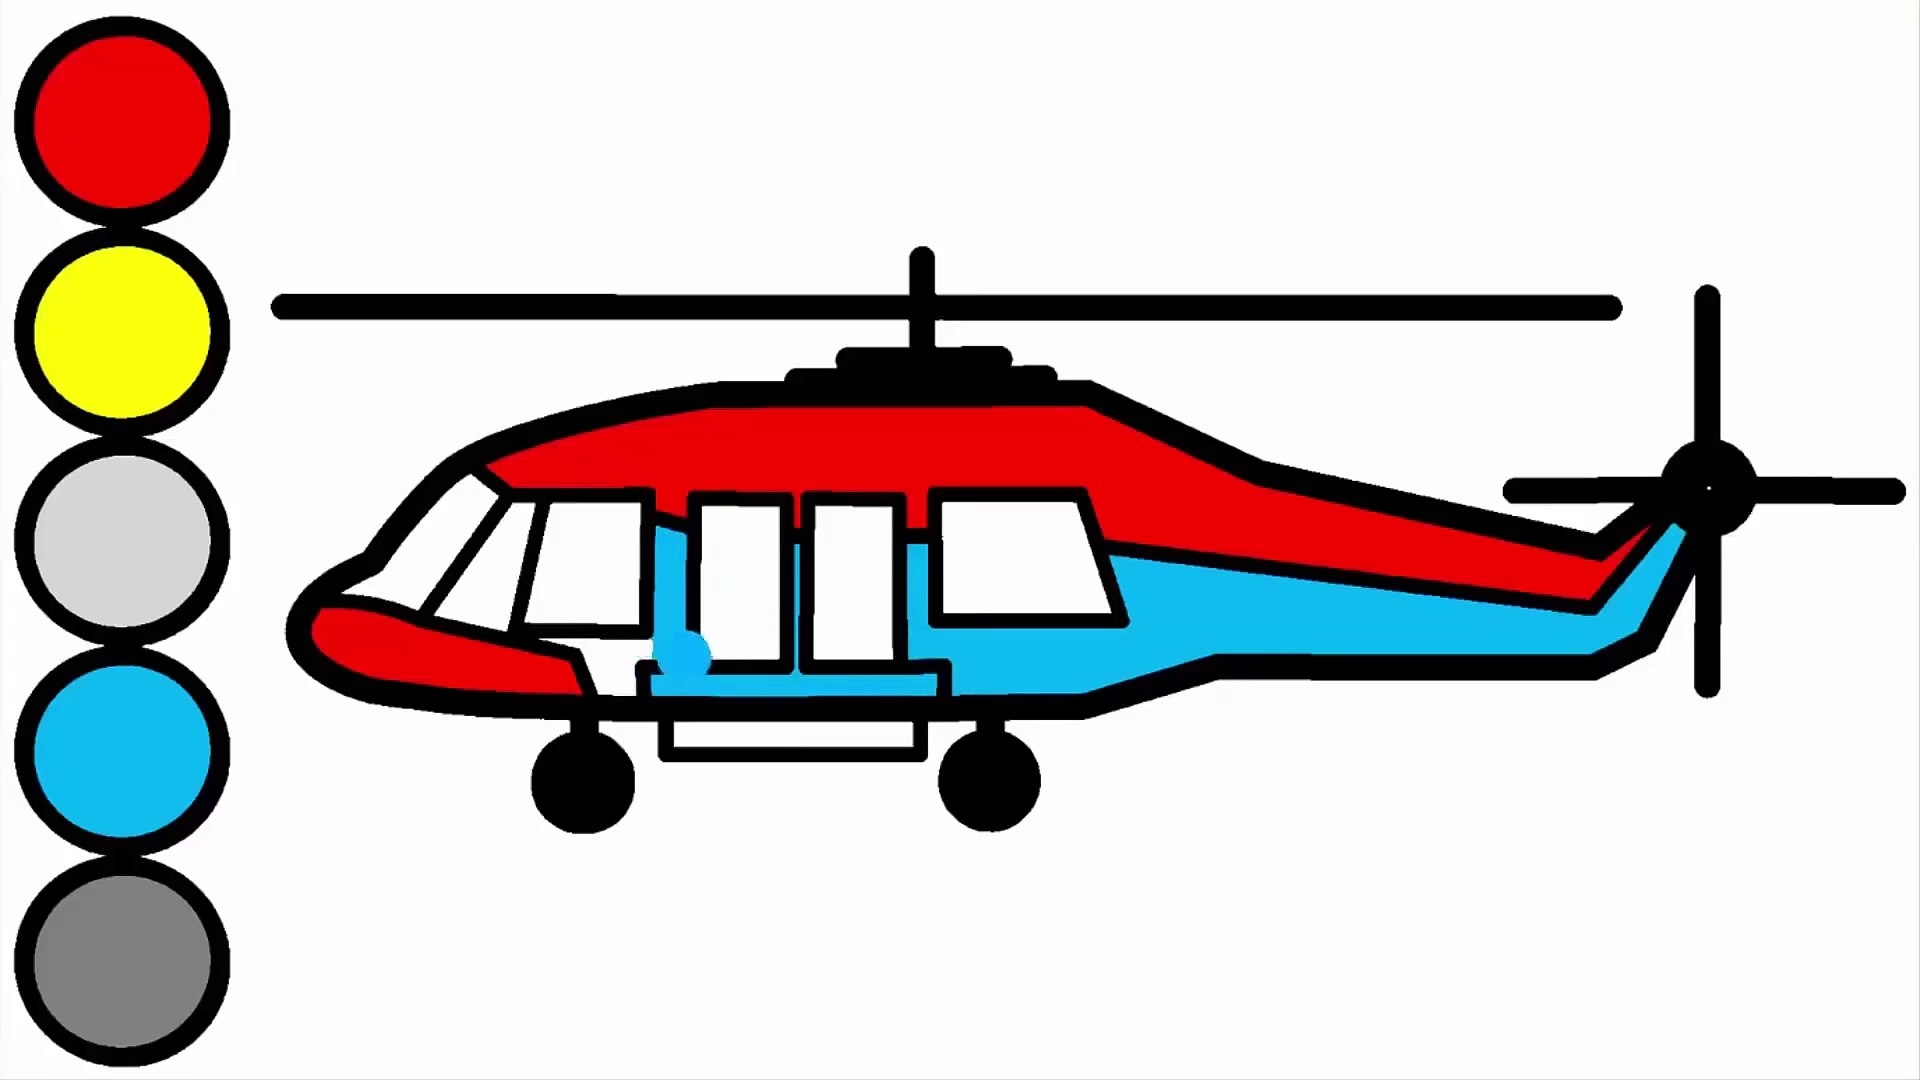 пожарный вертолет картинки для детей